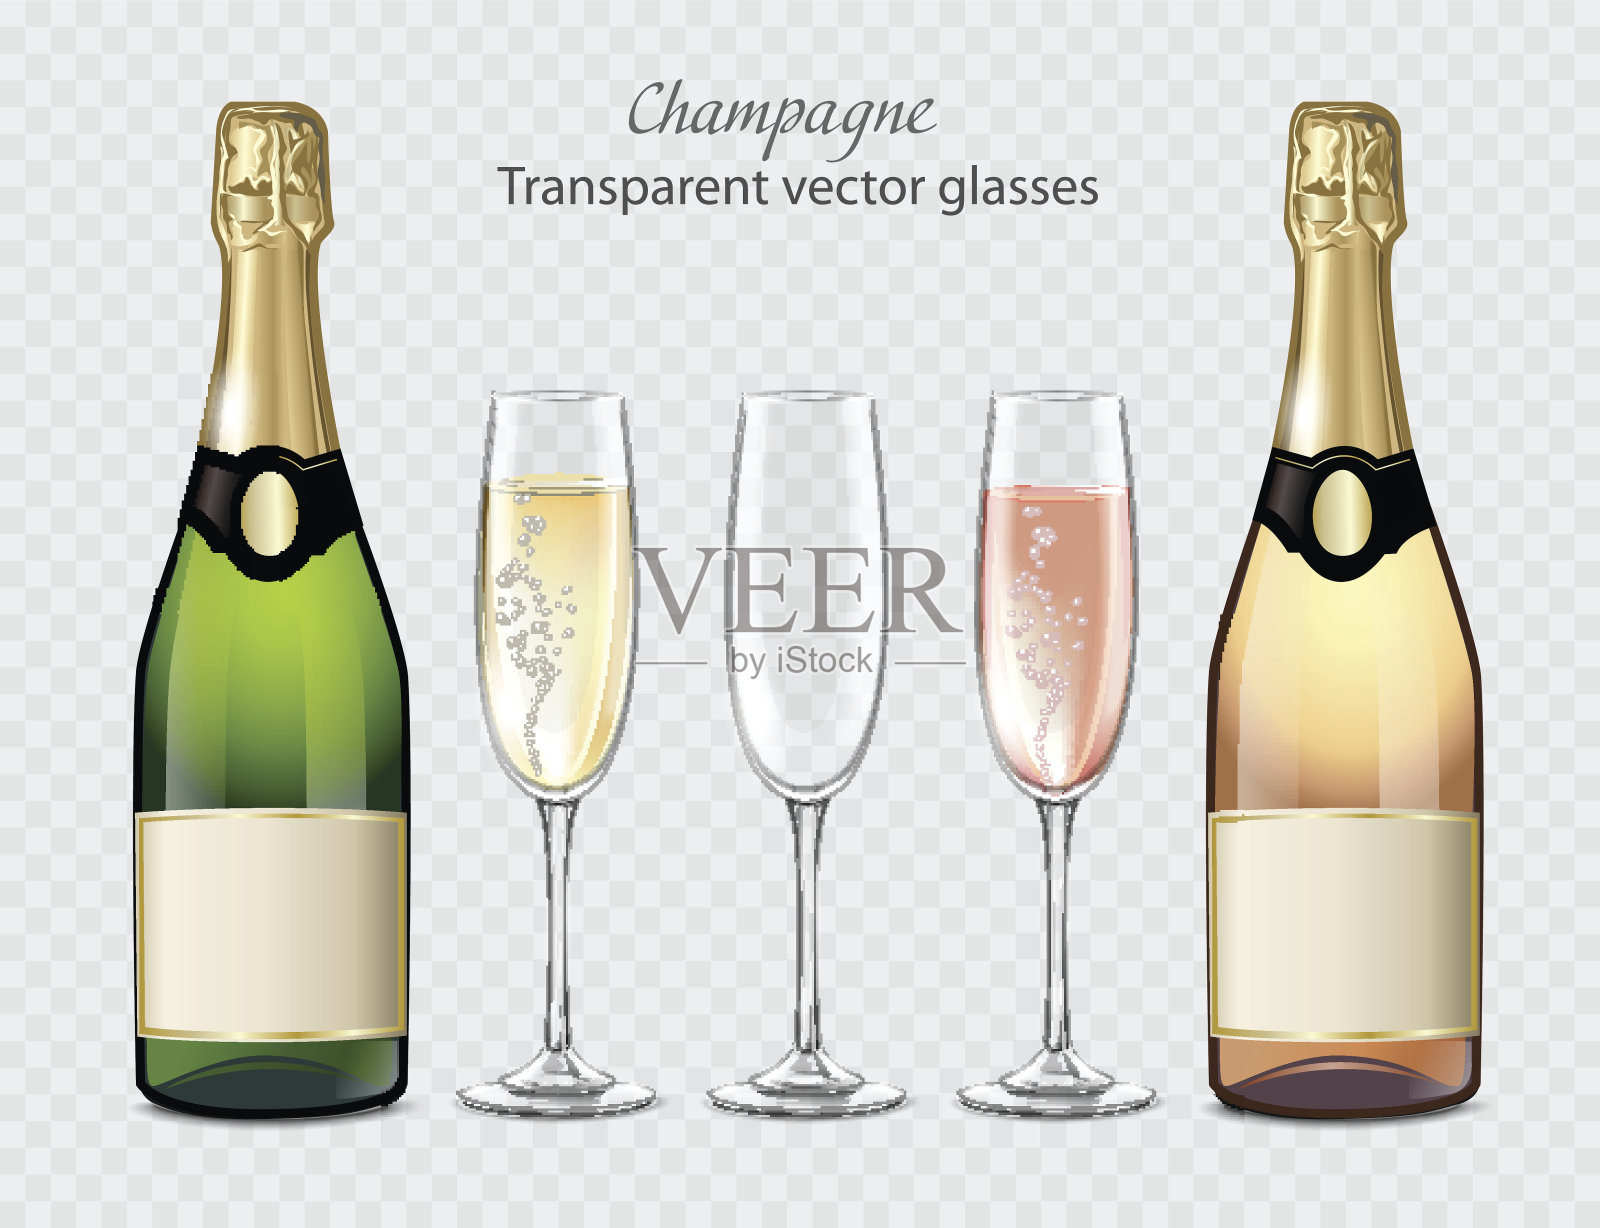 透明的矢量杯和香槟瓶和空杯子插画图片素材